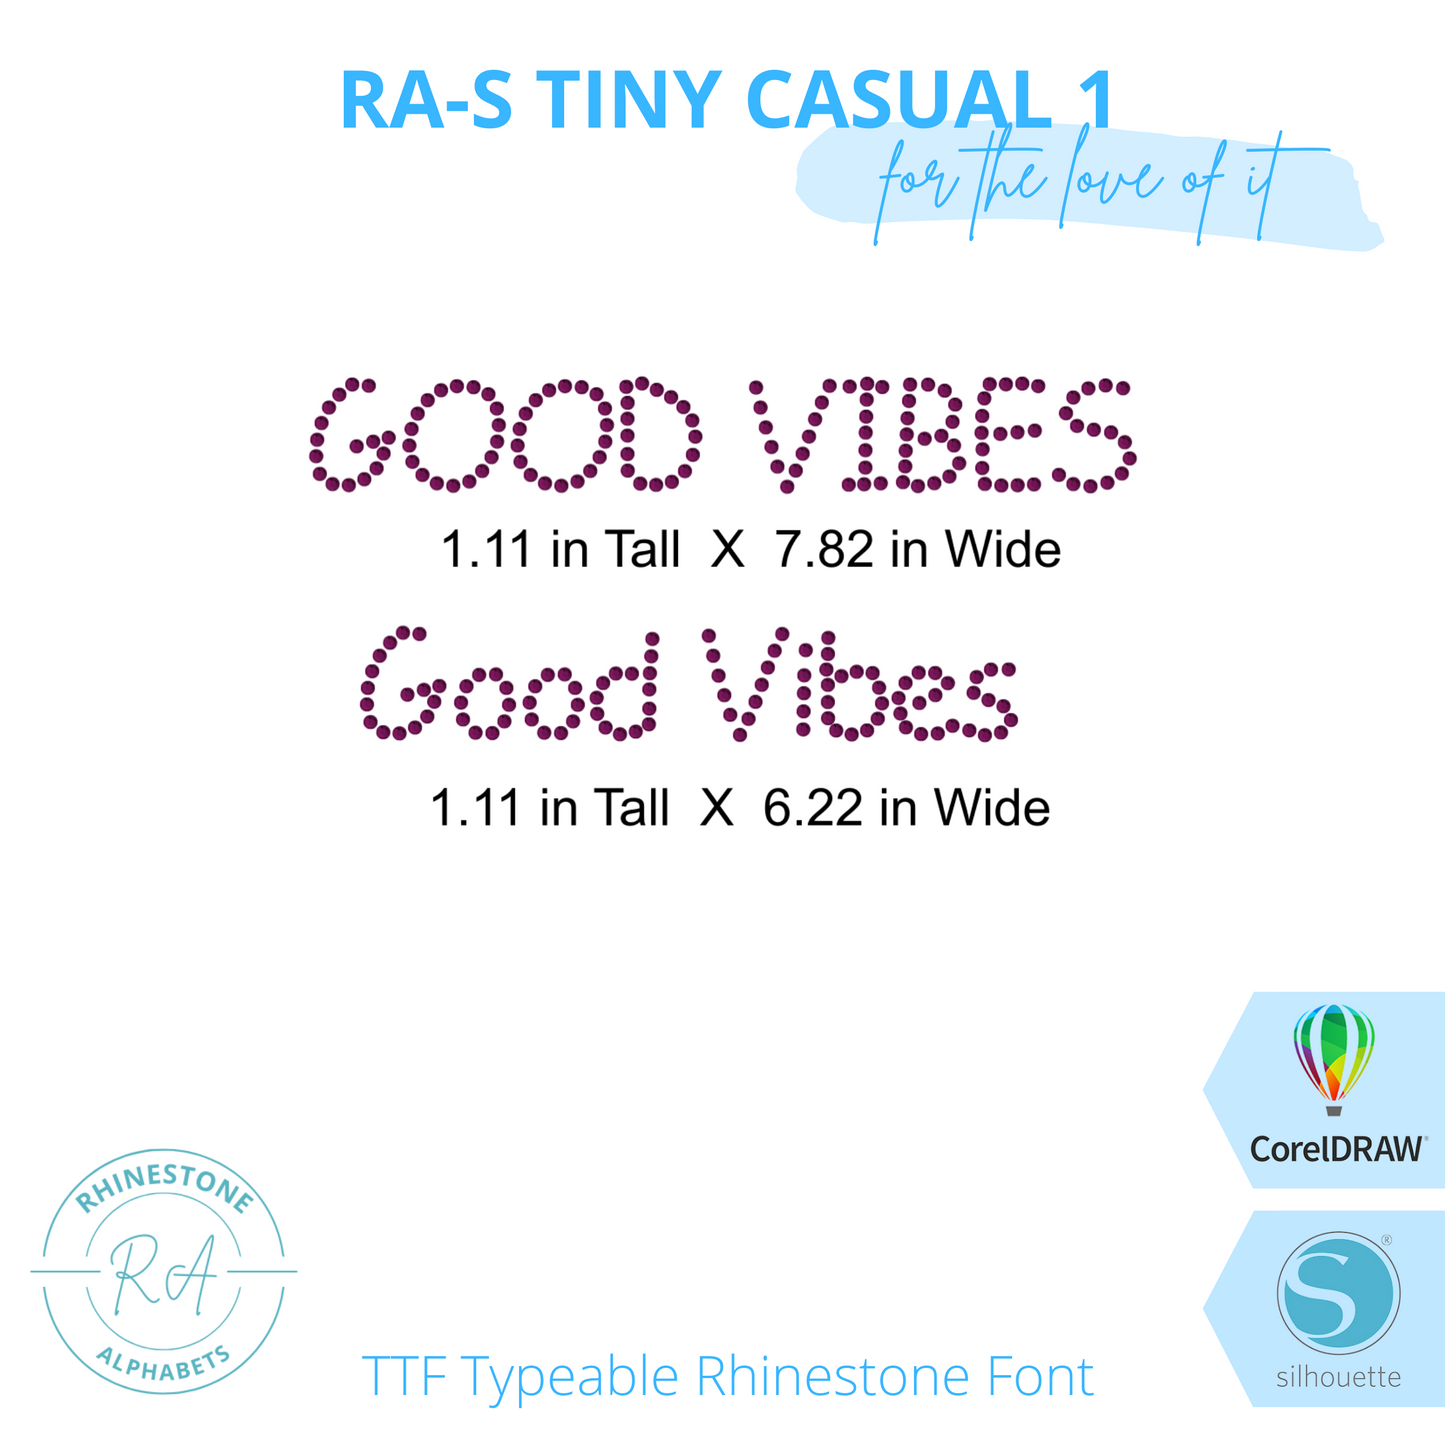 RA-S Tiny Casual 1 - RhinestoneAlphabets